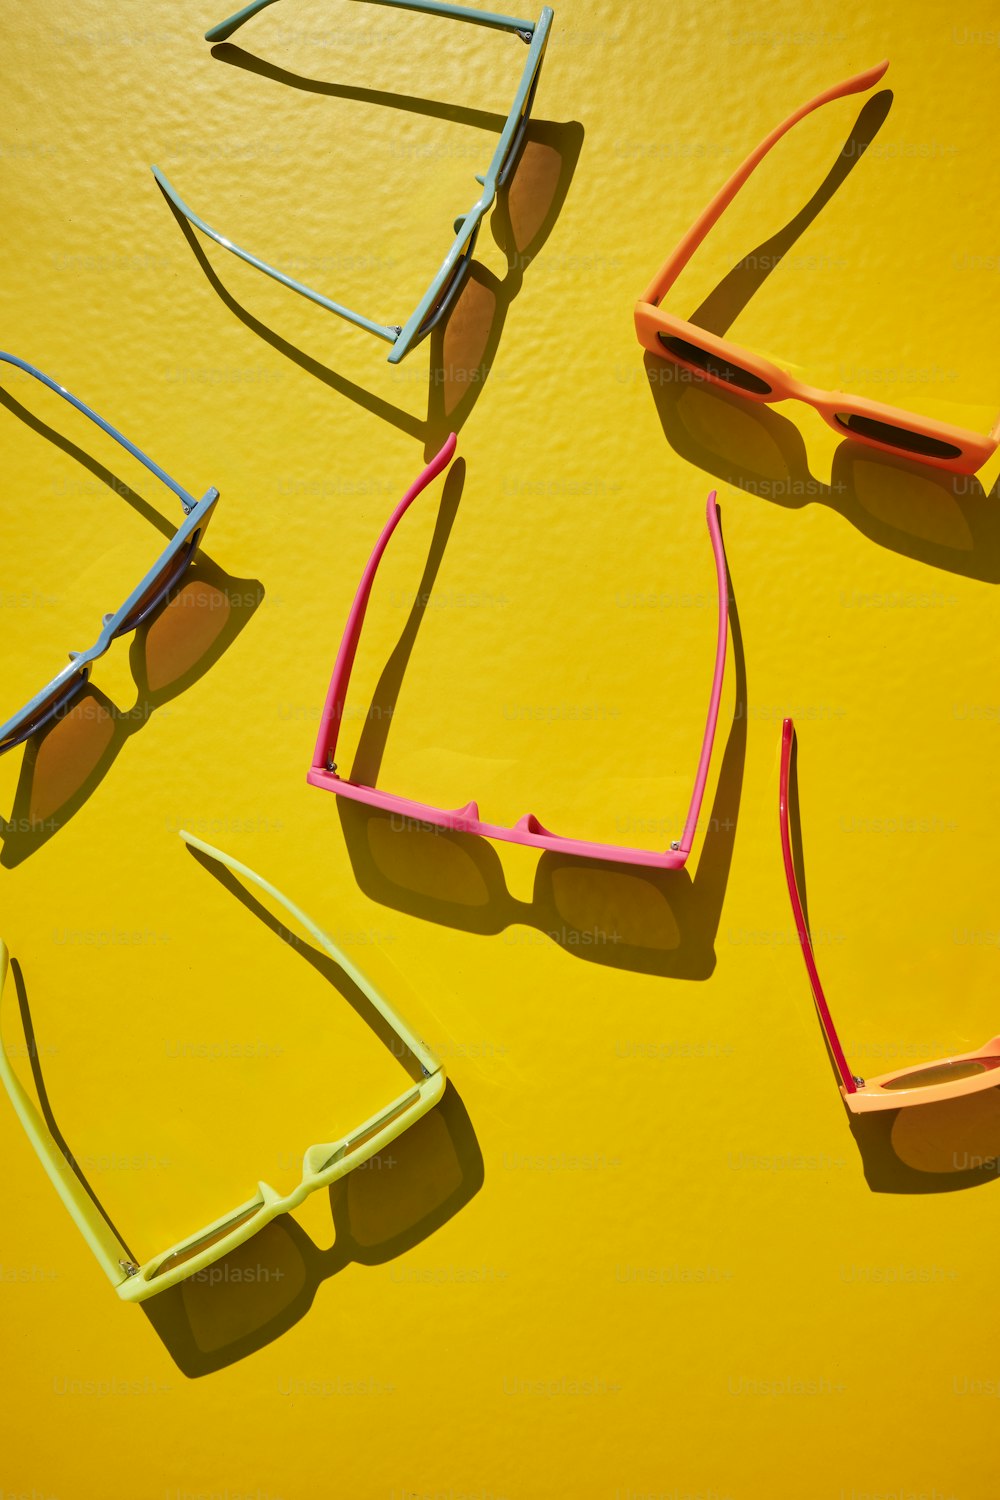 Vier Sonnenbrillen auf einer gelben Oberfläche